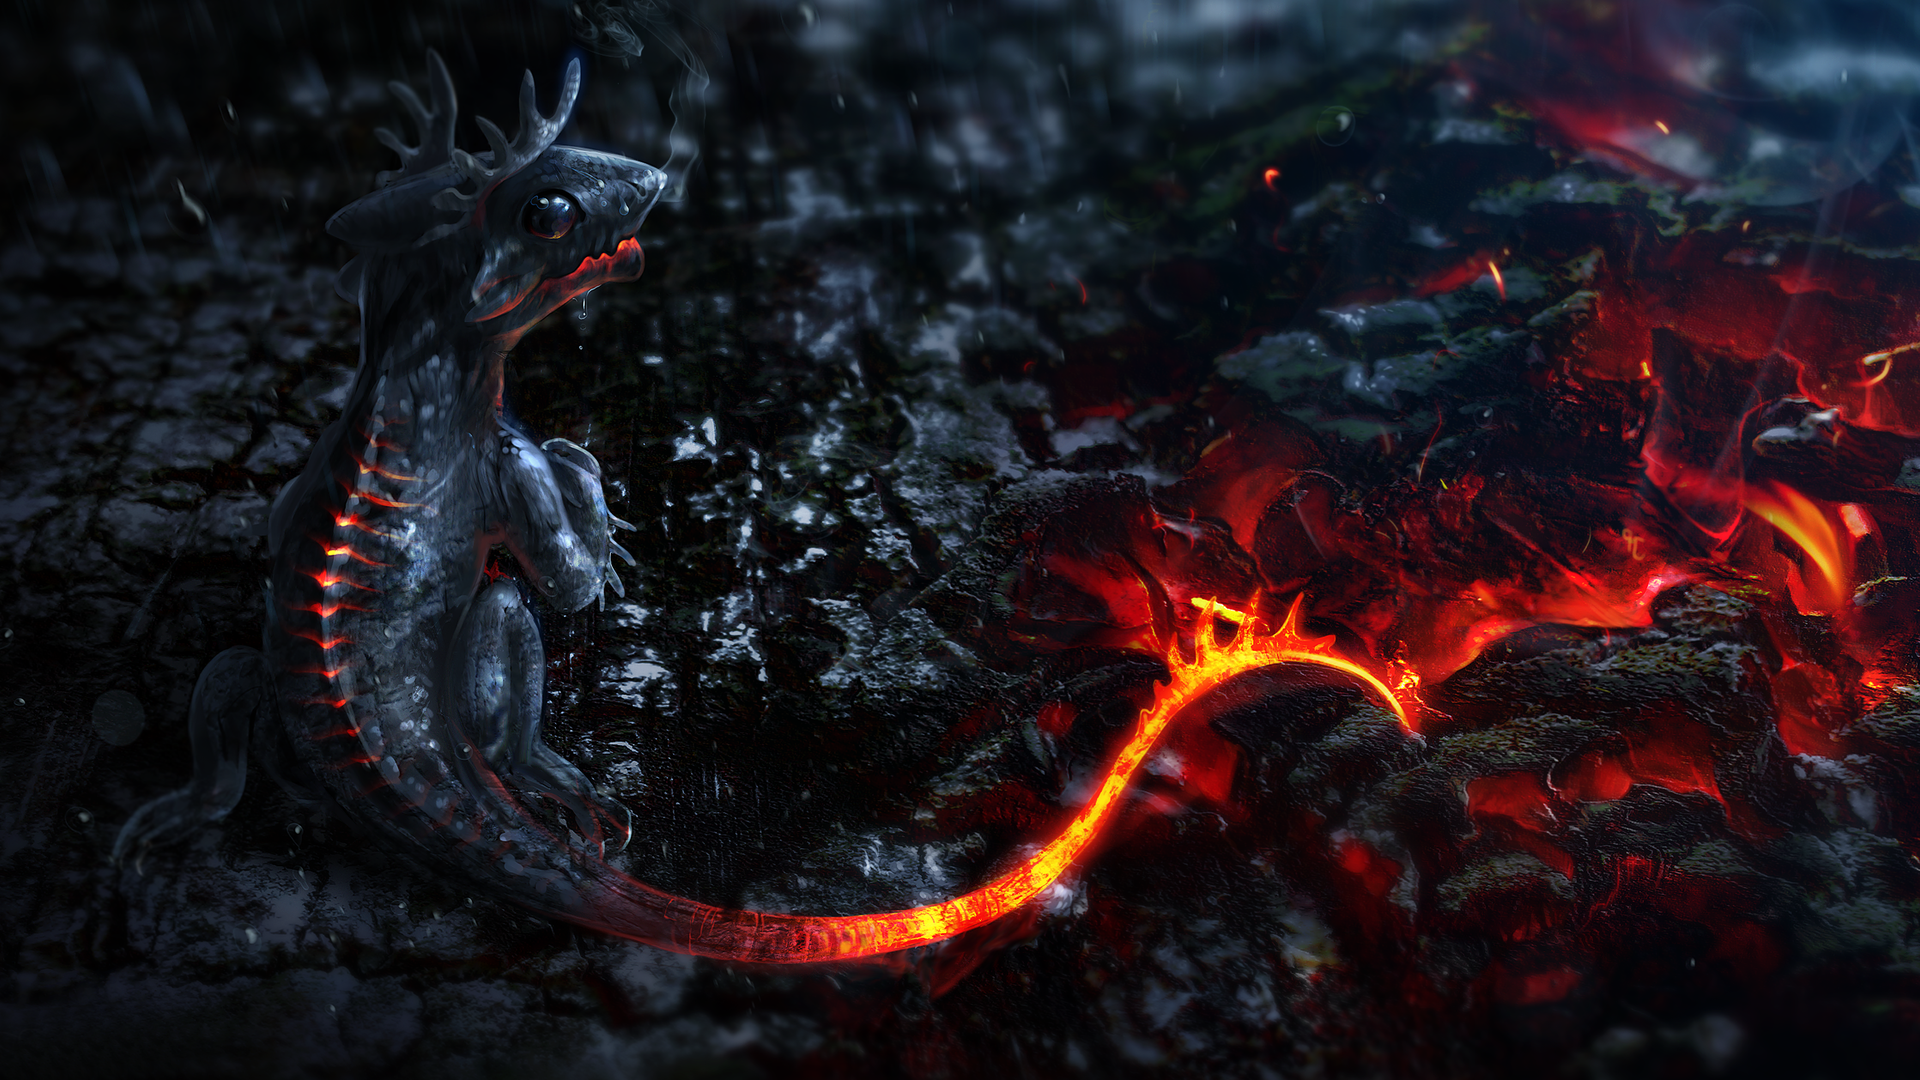 Dragon backgrounds for desktop